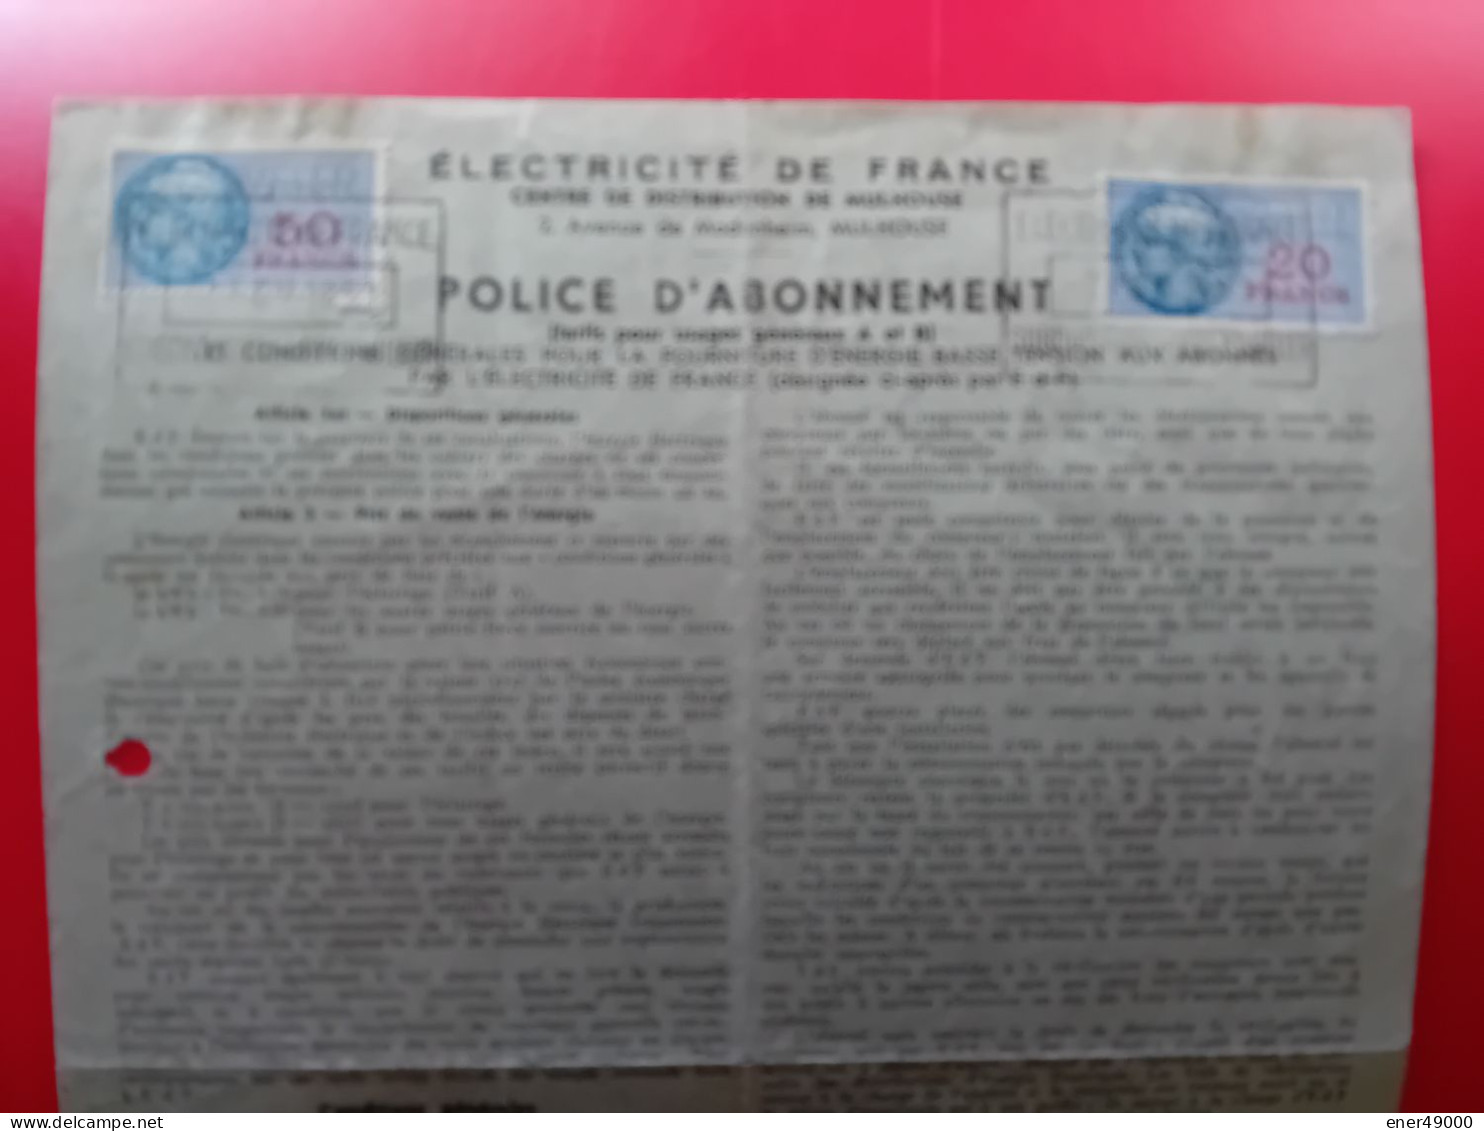 FISCAUX 20 ET 50 F SUR POLICE D'ABONNEMENT ELECTRICITE DE FRANCE 1951 - Covers & Documents